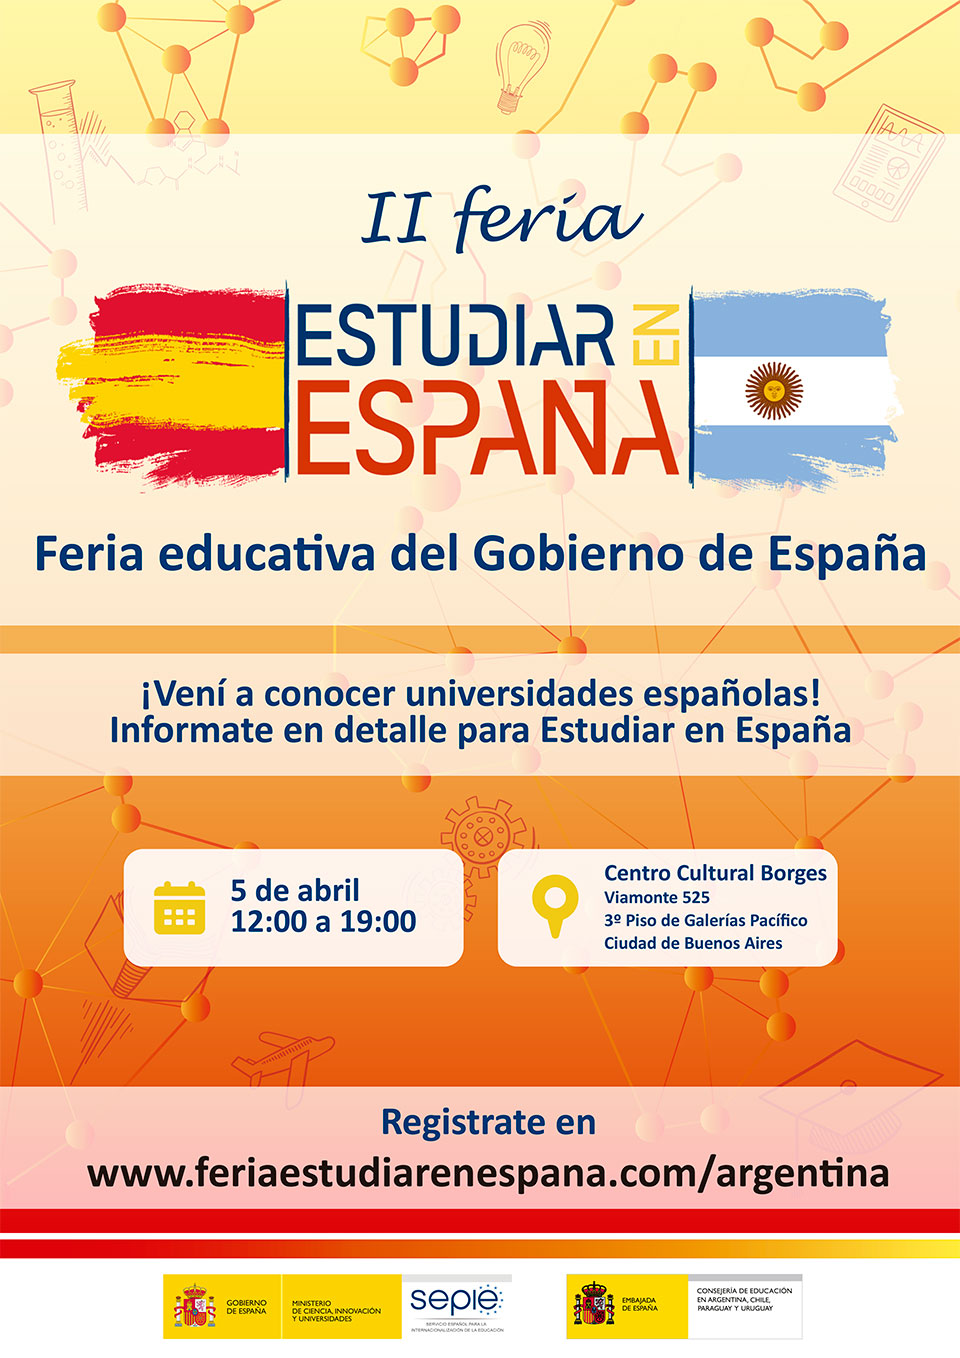 Segunda Feria "Estudiar en España"